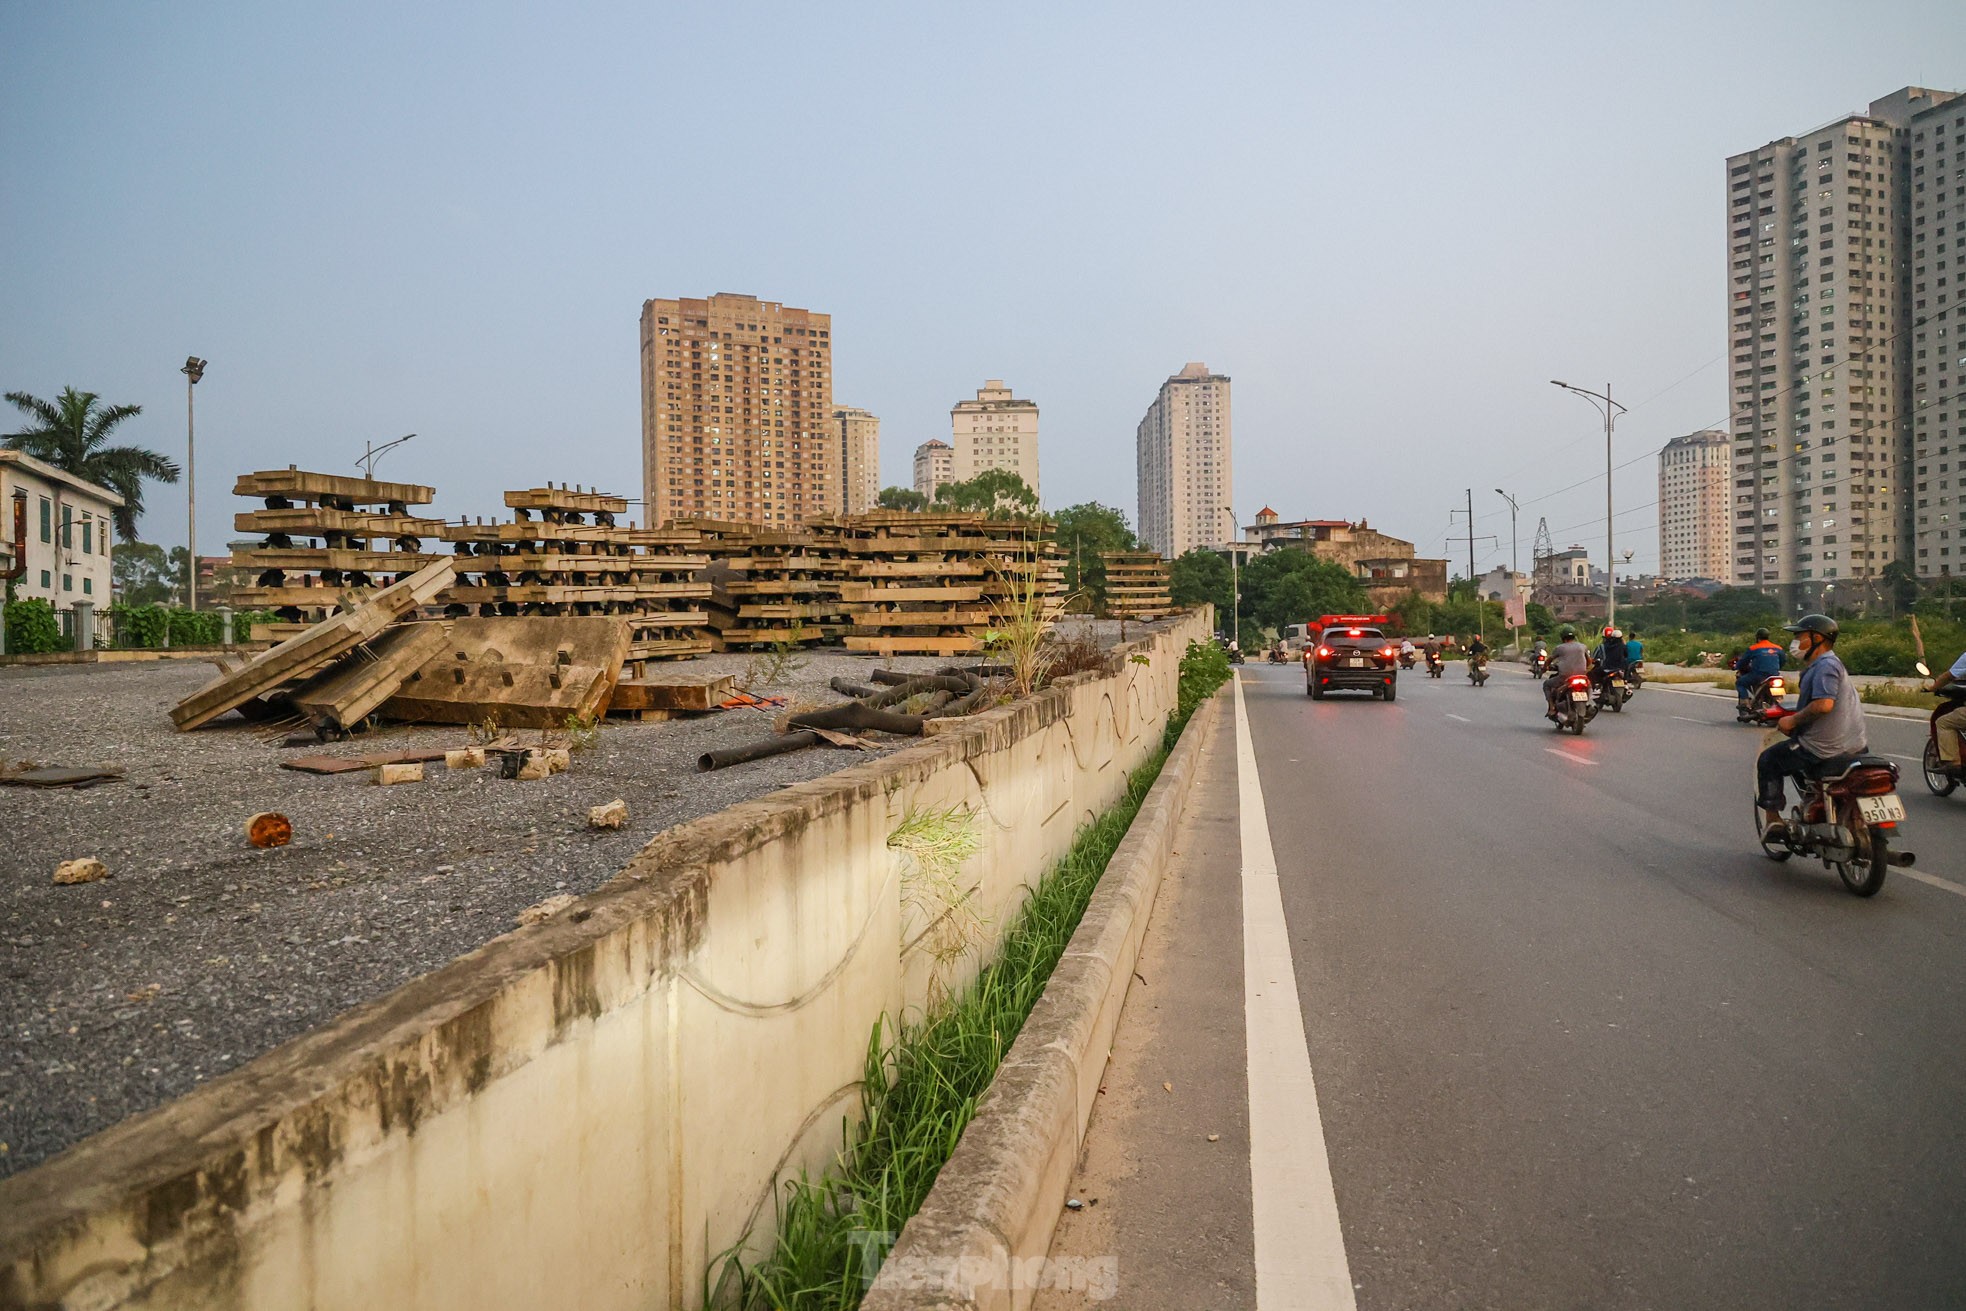 Cầu vượt bỏ hoang trên đại lộ nghìn tỷ ở Hà Nội - Ảnh 13